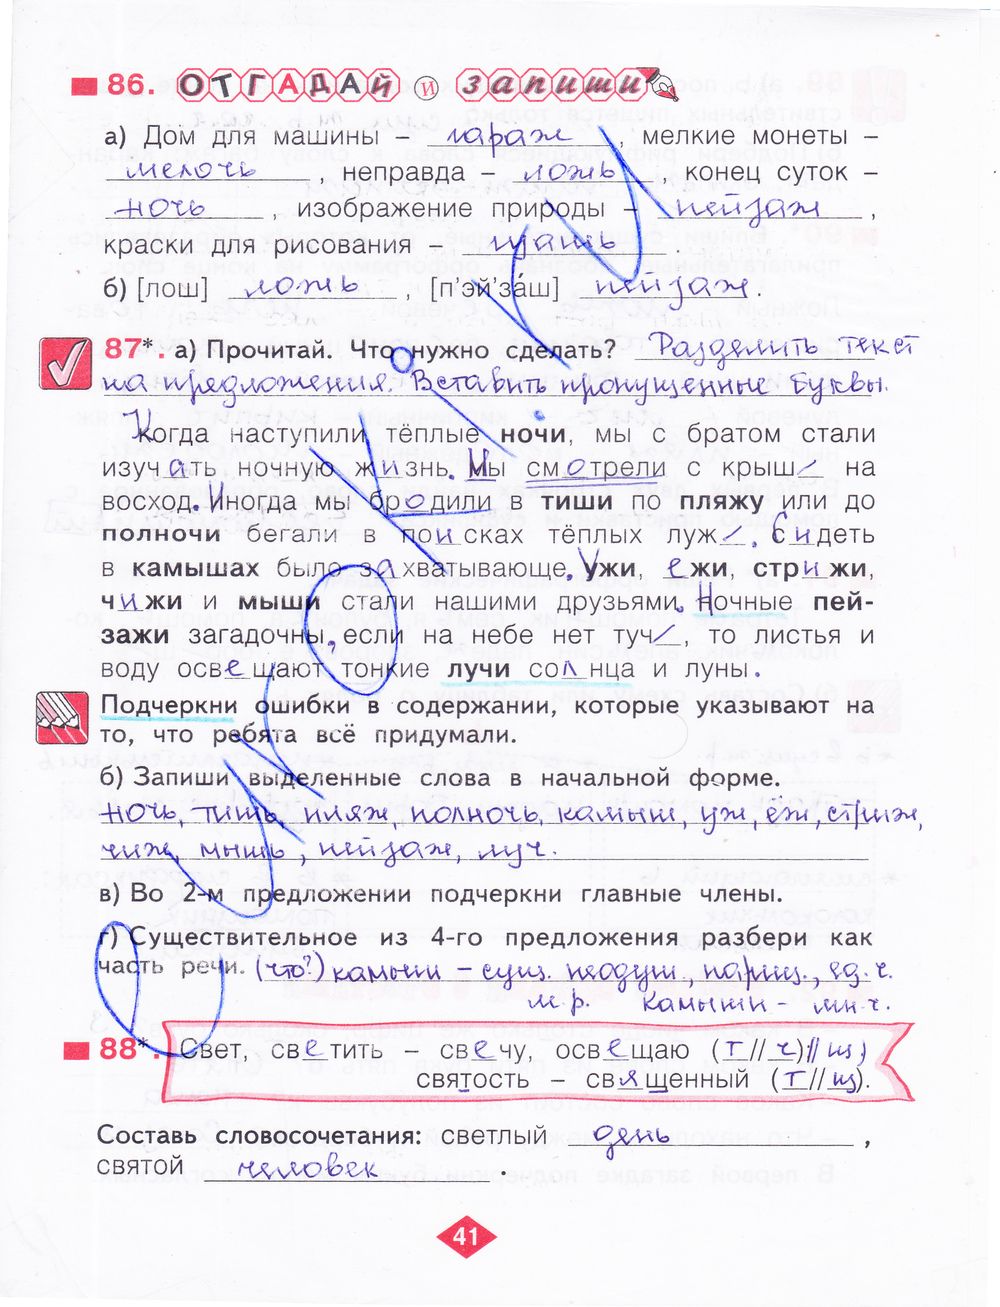 ГДЗ Русский язык 3 класс - стр. 41